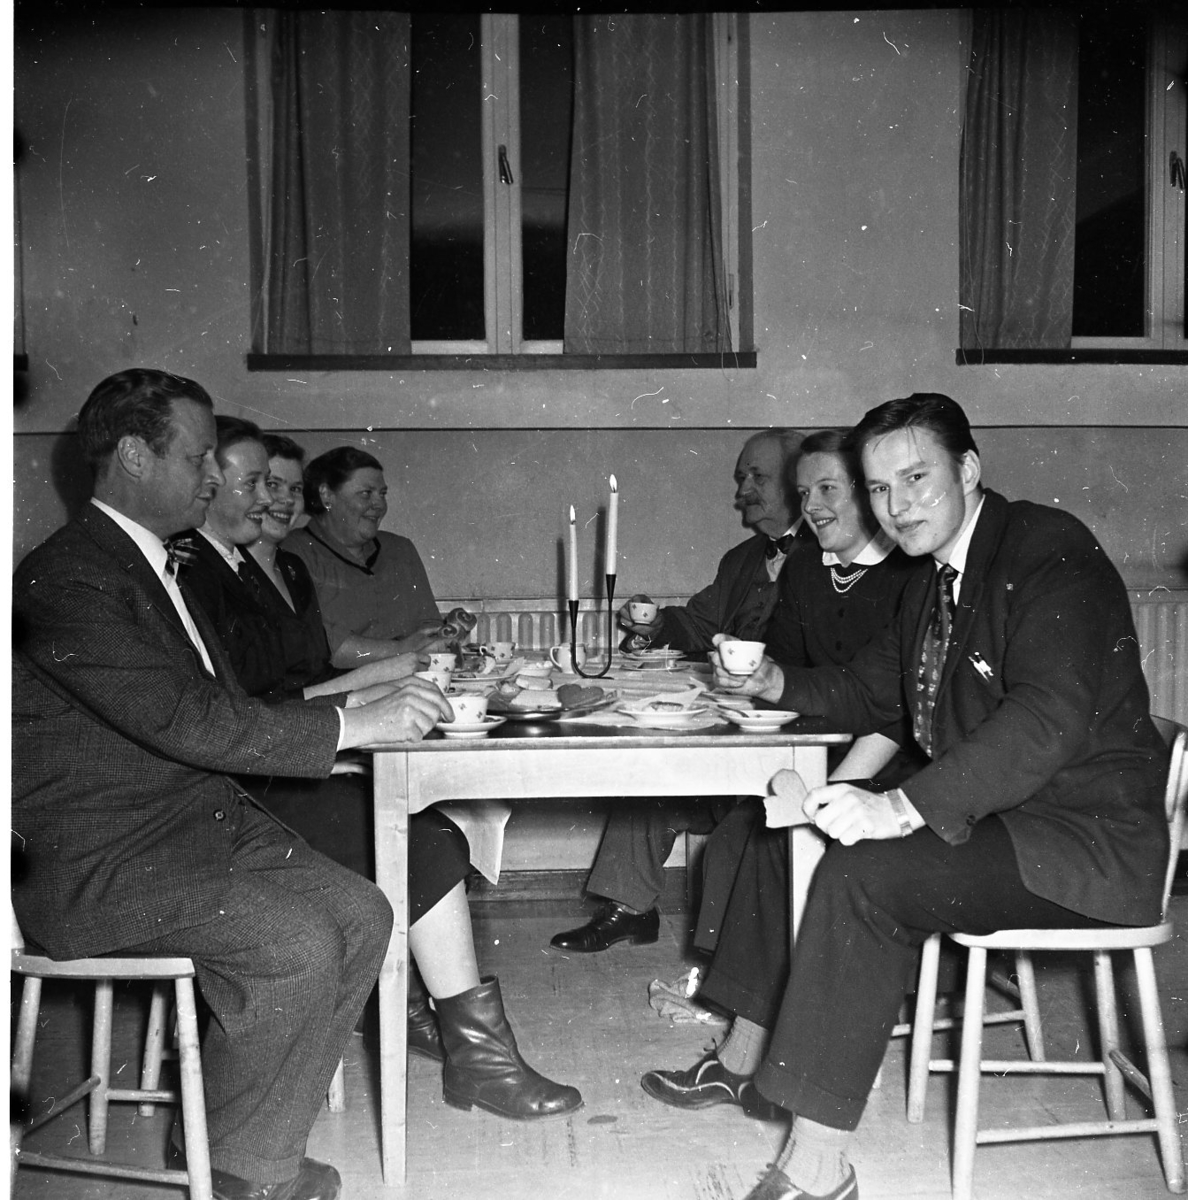 Män och kvinnor sitter vid kaffebord med tända ljus. Närmast till vänster Allan Berggren och som trea Eivor Åberg, därnäst Vivan Johansson. Till höger längst ned till höger A E Bolling och därnäst Ulla Jonasson.